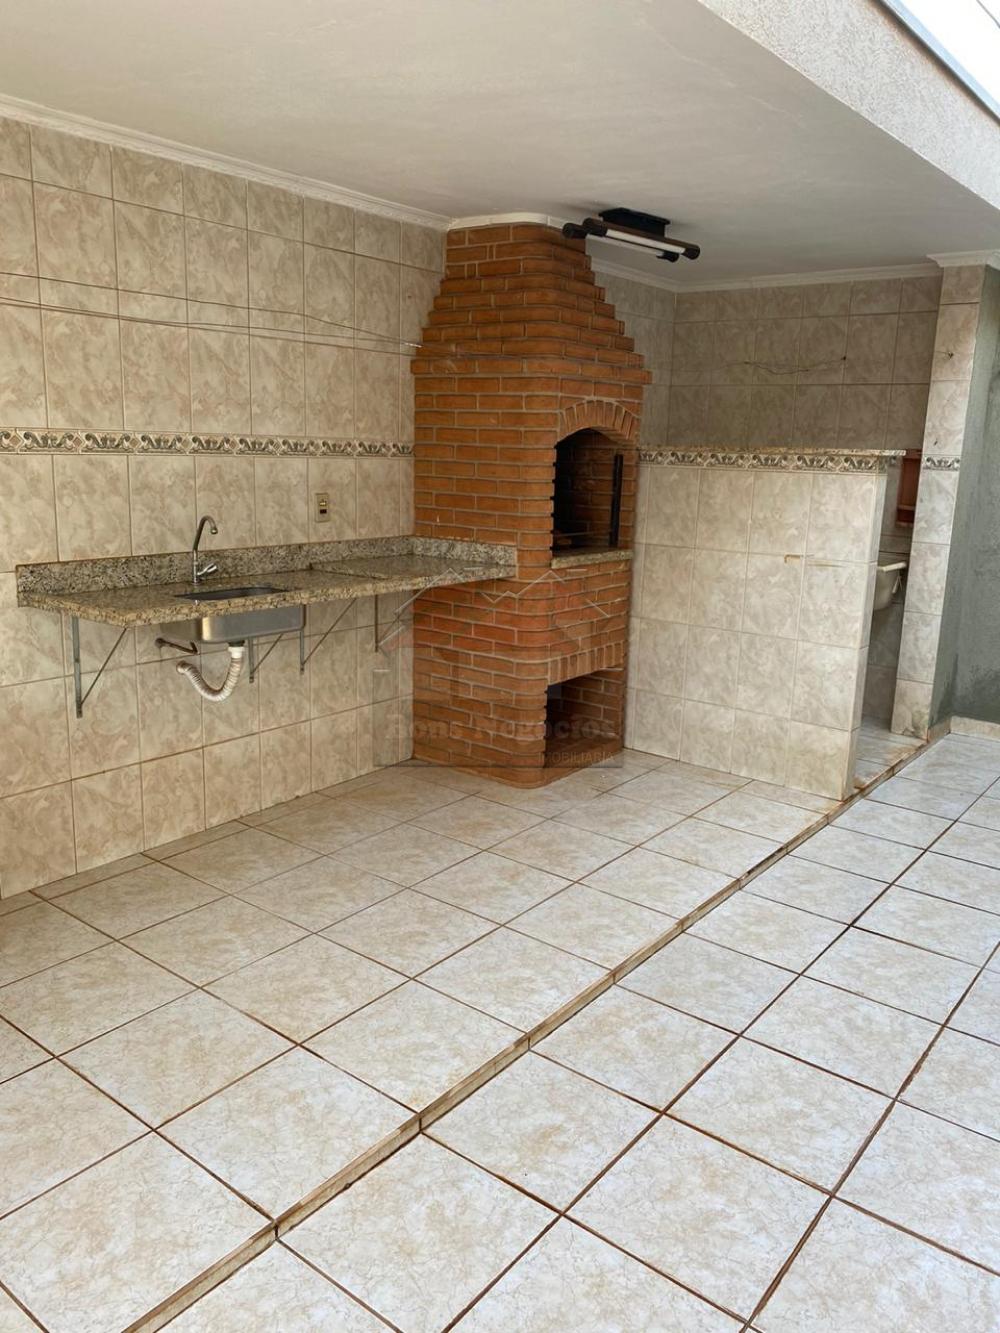 Comprar Casa / Padrão em Ribeirão Preto R$ 419.000,00 - Foto 15